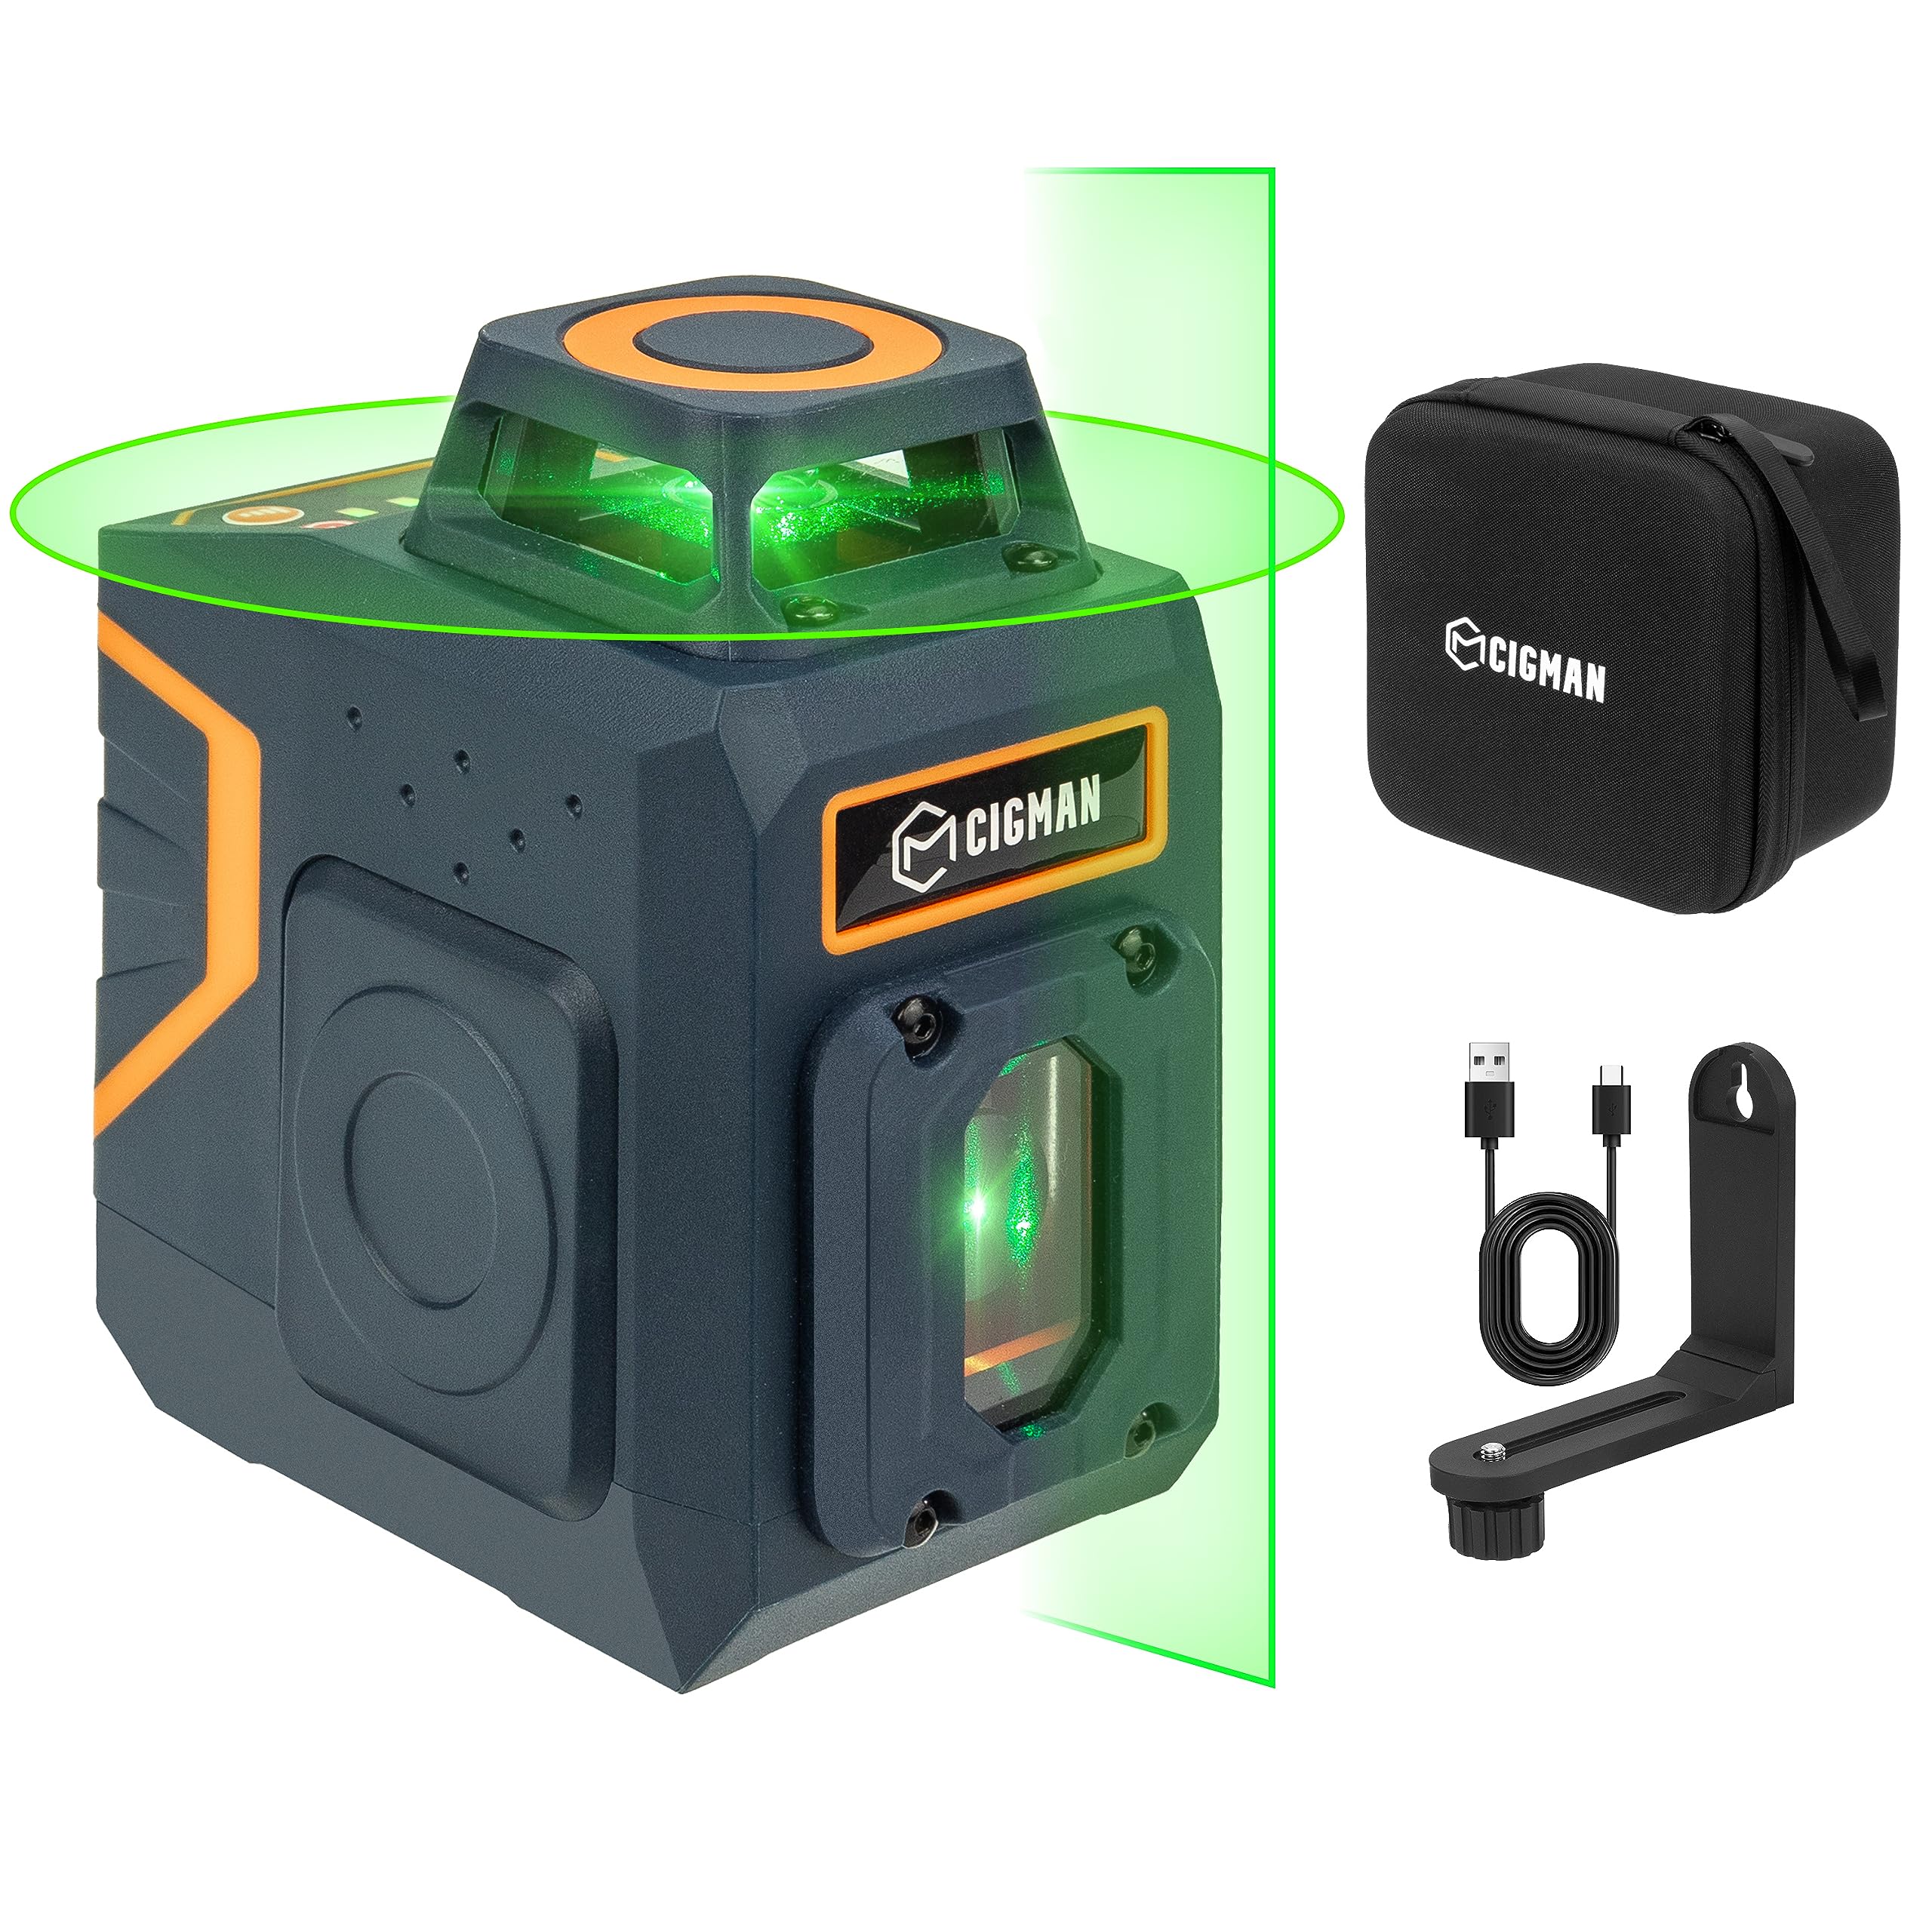 CIGMAN CM-605 5-Linien-Laser-Nivellierlaser, umschaltbar, 1 x 360° + 1 x 180° Laserfenster, grüne Laserlinie 30 m (bis zu 50 m mit Detektor), integrierter wiederaufladbarer Akku, Drehständer